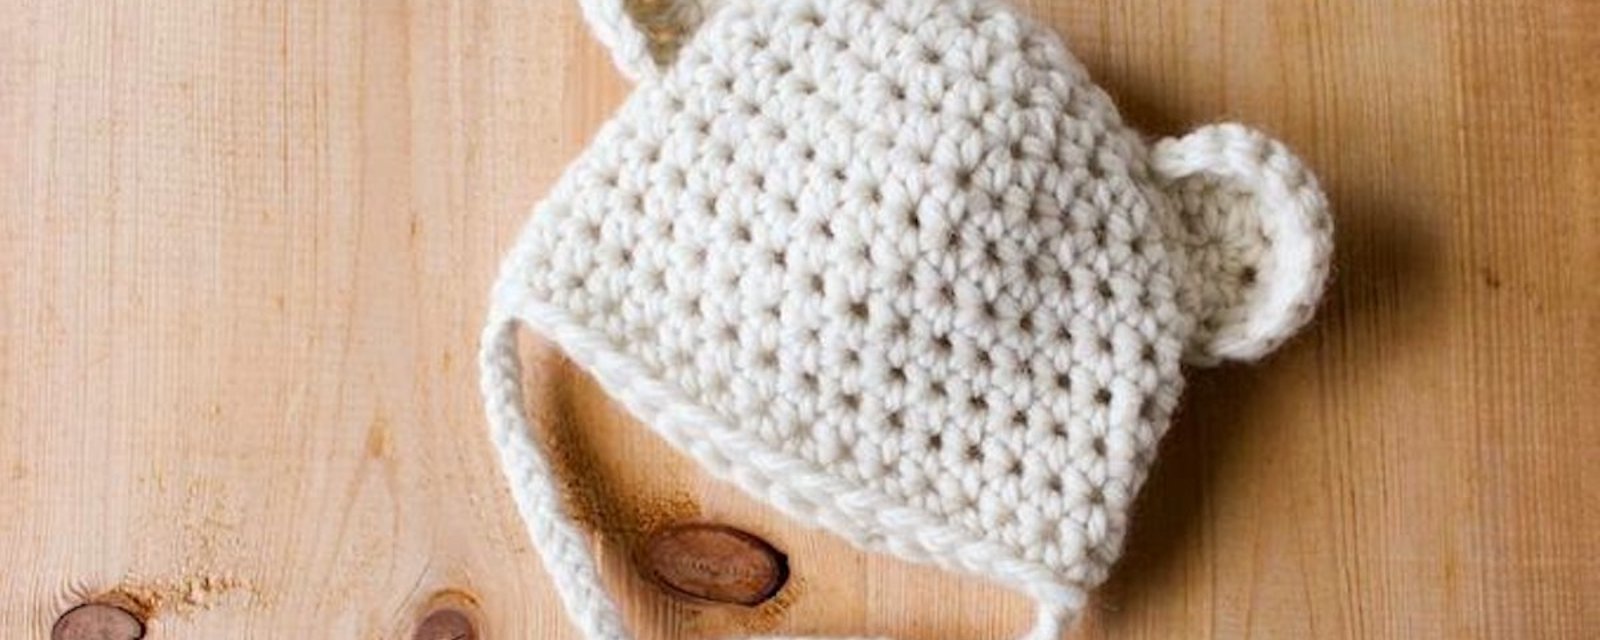 Projet crochet: un adorable bonnet «ourson des neige» pour bébé